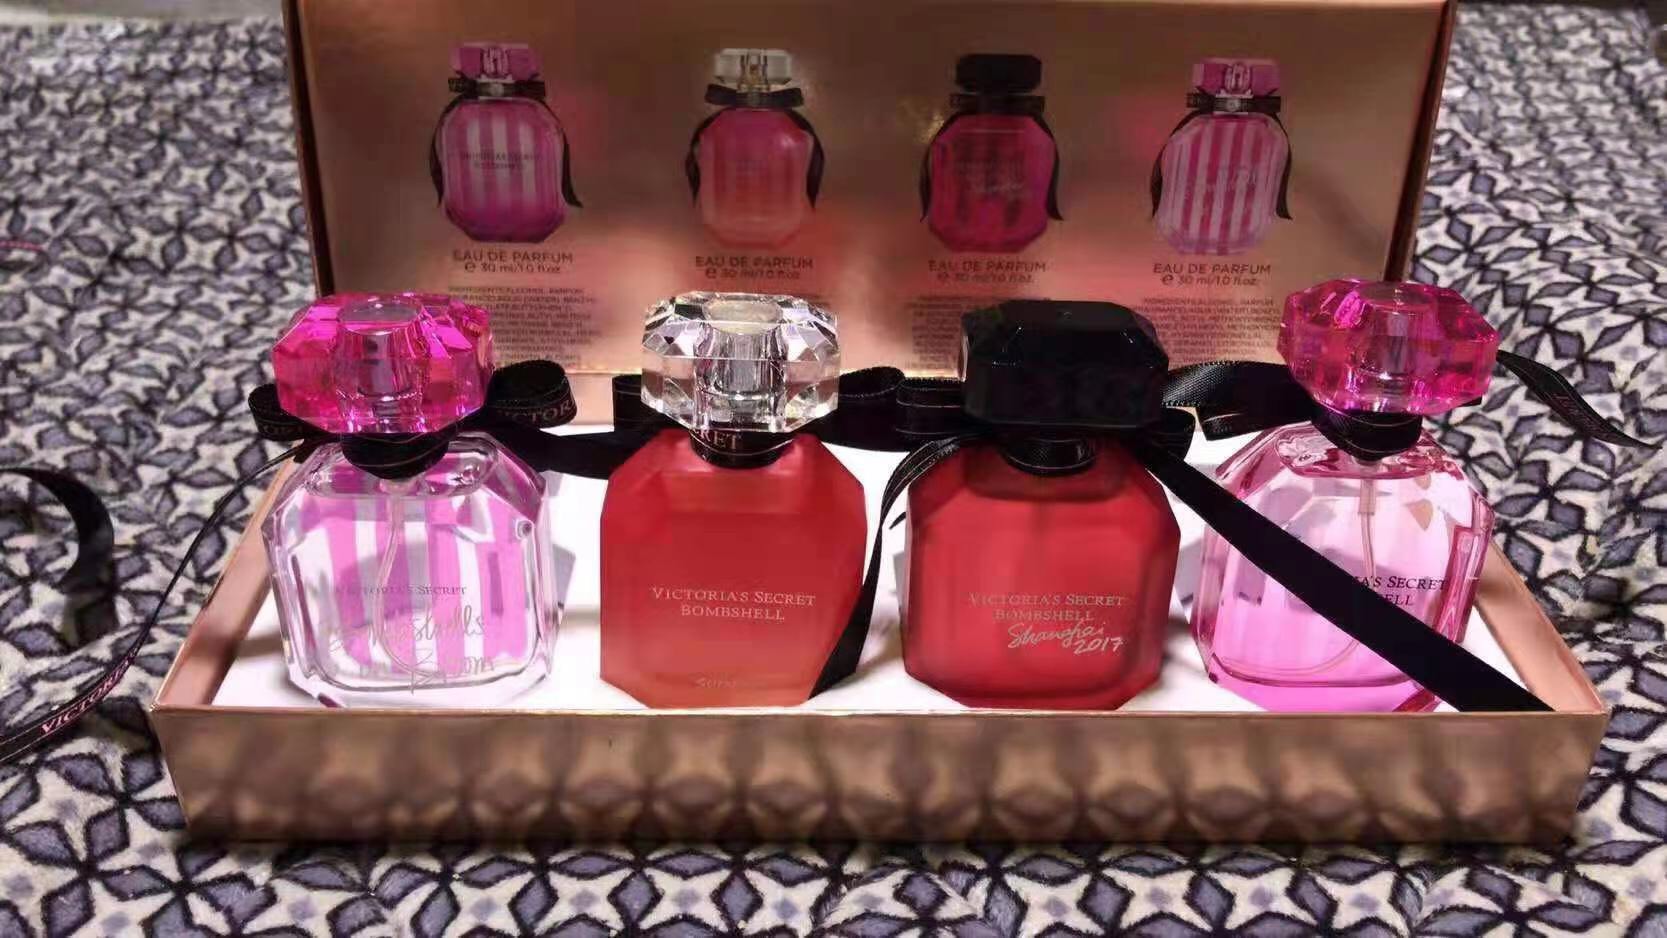 กิ๊ฟเซต Victoria \'s Secret Bombshell Tester perfume  มี 4 กลิ่นในแพคขวดละ 30 ml.หัวสเปรย์